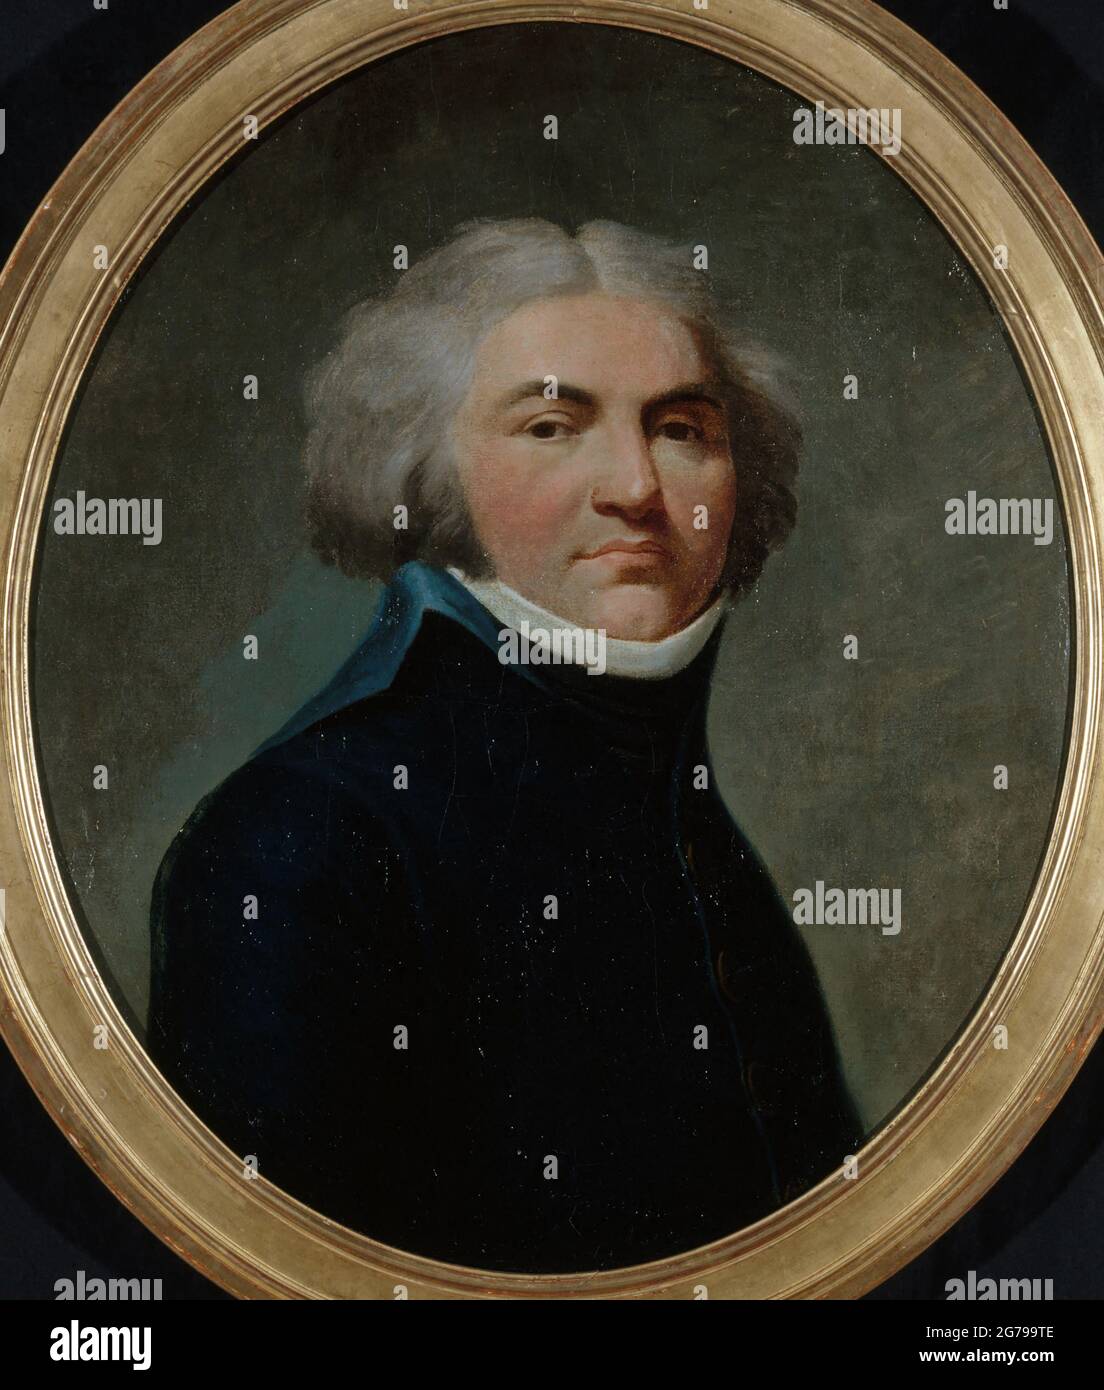 Portrait of General Jean-Baptiste Kléber (1753-1800). Museum: Musée Carnavalet, Paris. Author: Louis-Leopold Boilly. Stock Photo